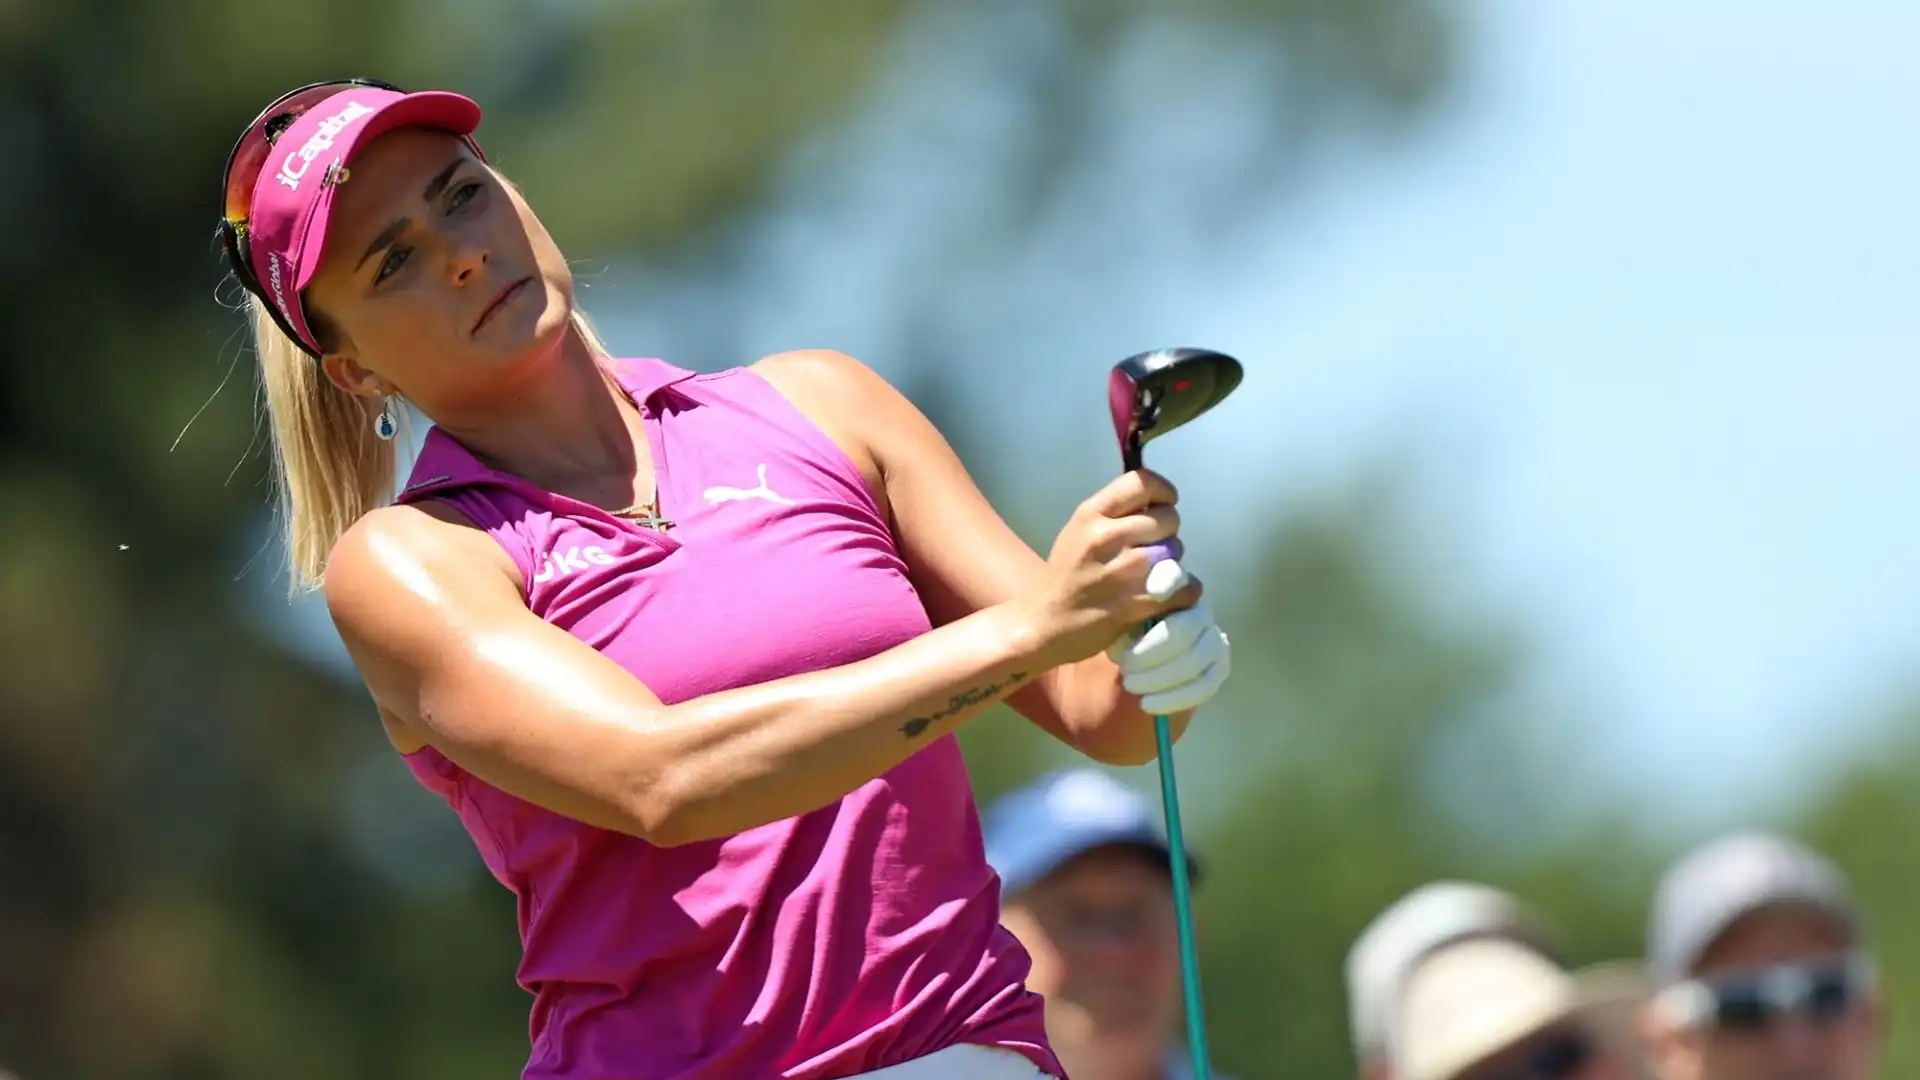 Lexi Thompson è diventata la seconda golfista più giovane della storia ad aggiudicarsi un torneo major (Chevron Championship) all'età di 19 anni nel 2014